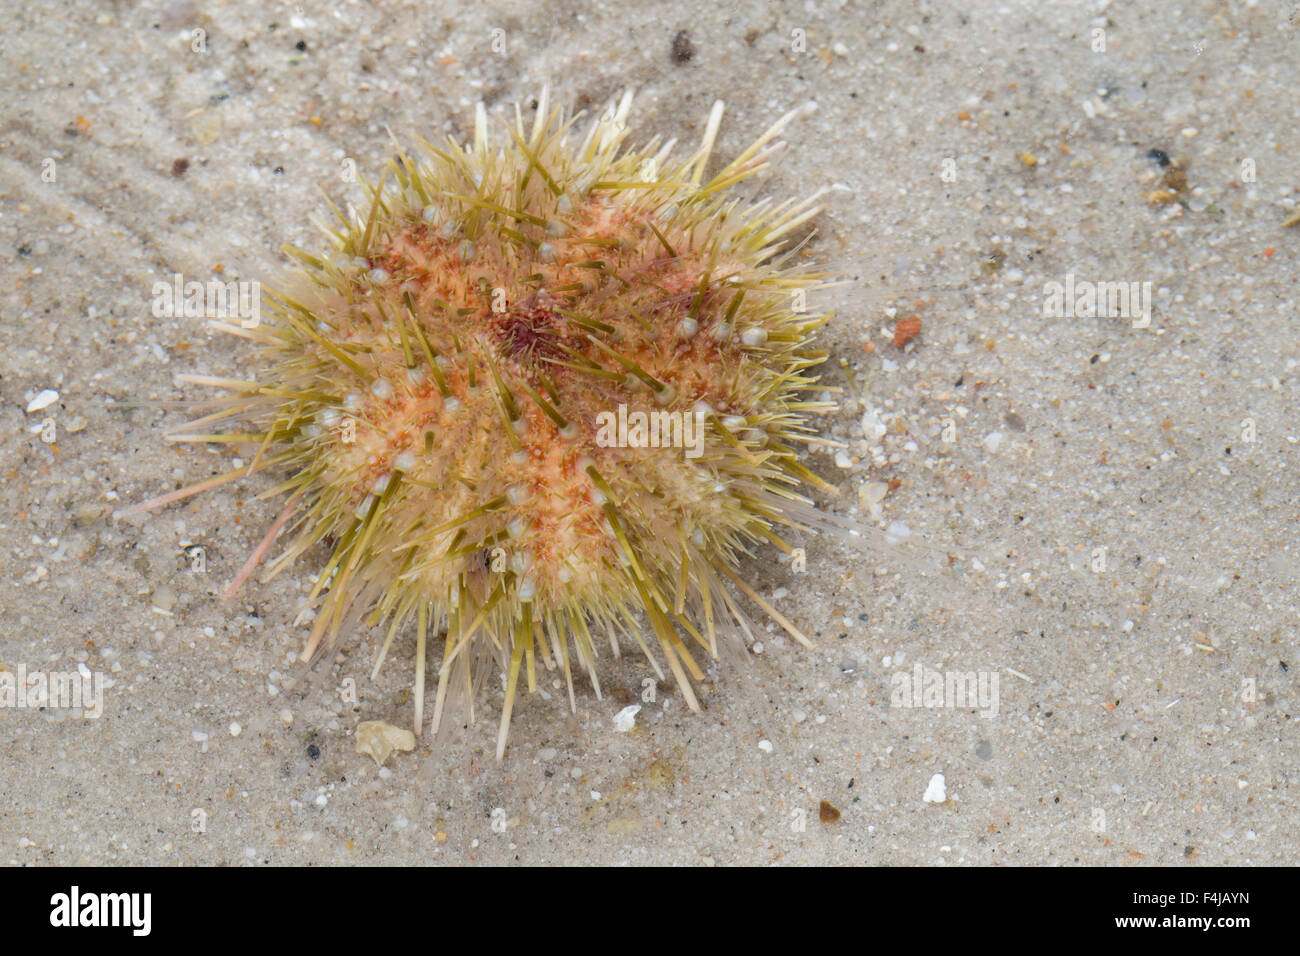 Elegant sea urchin, Schöner Seeigel, Hübscher Seeigel, Echinus elegans, Gracilechinus elegans Stock Photo